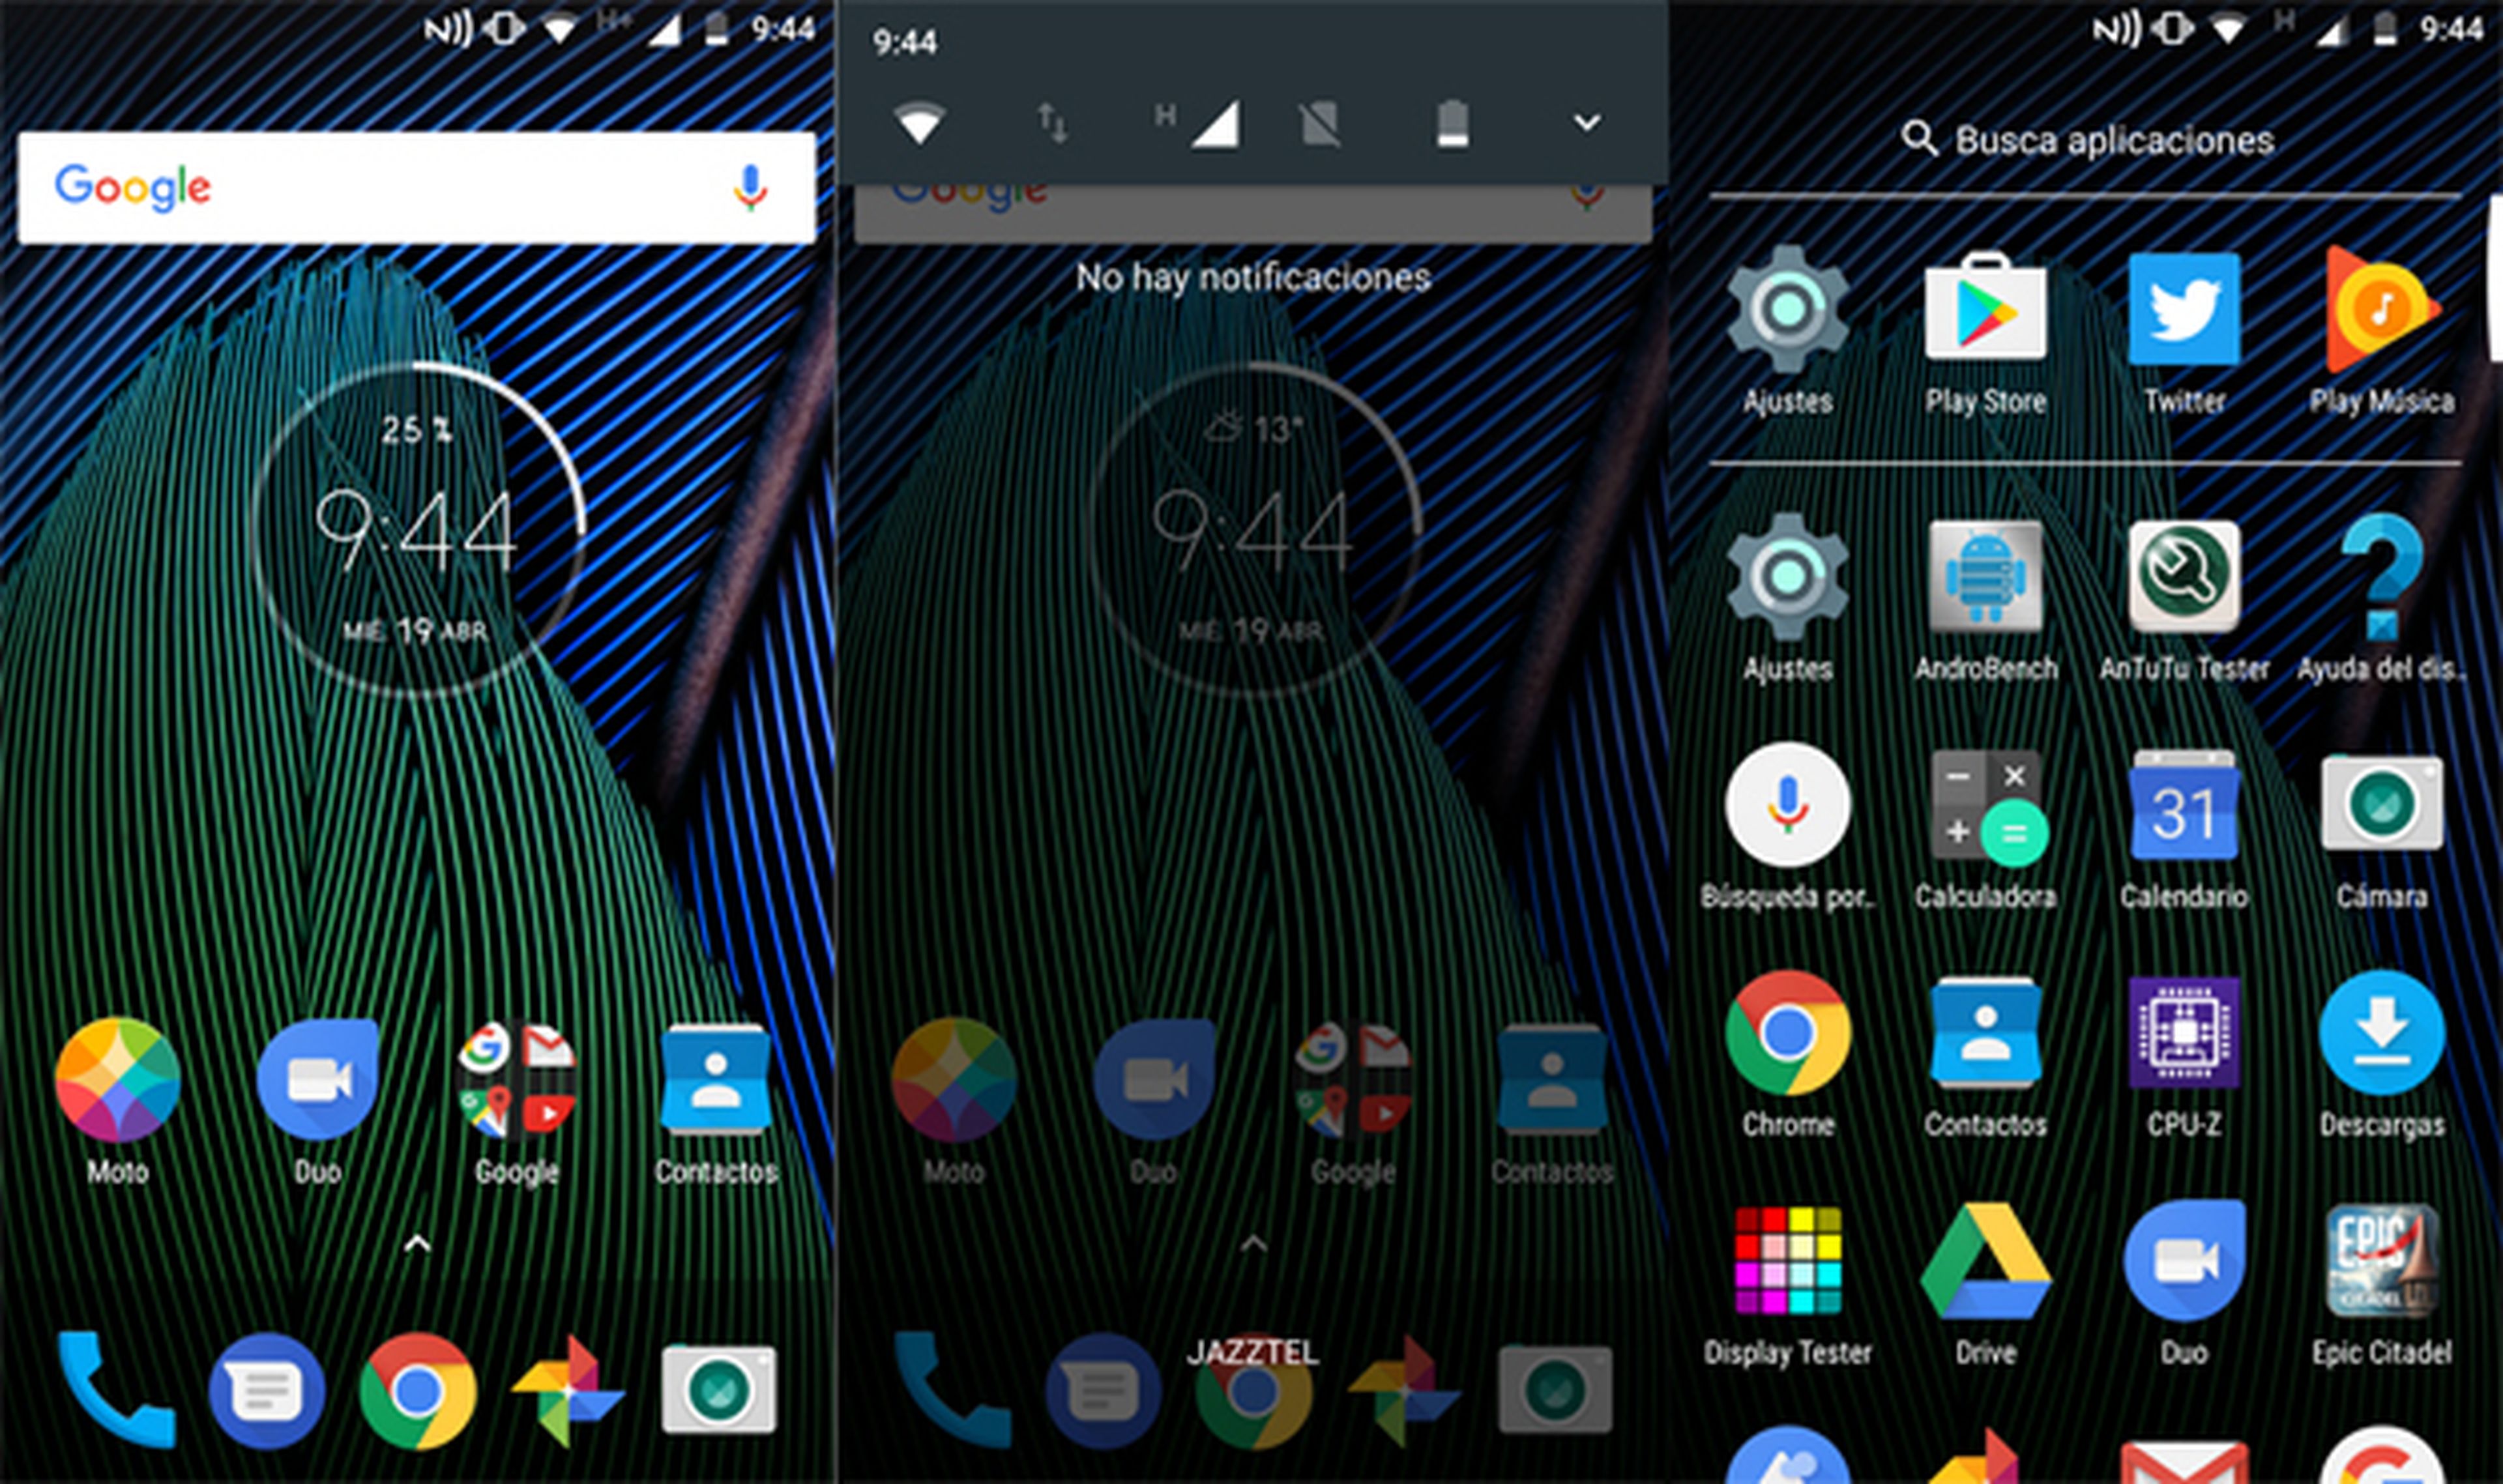 La interfaz está basada en Android 7.0 Nougat, y no trae casi personalización de Motorola